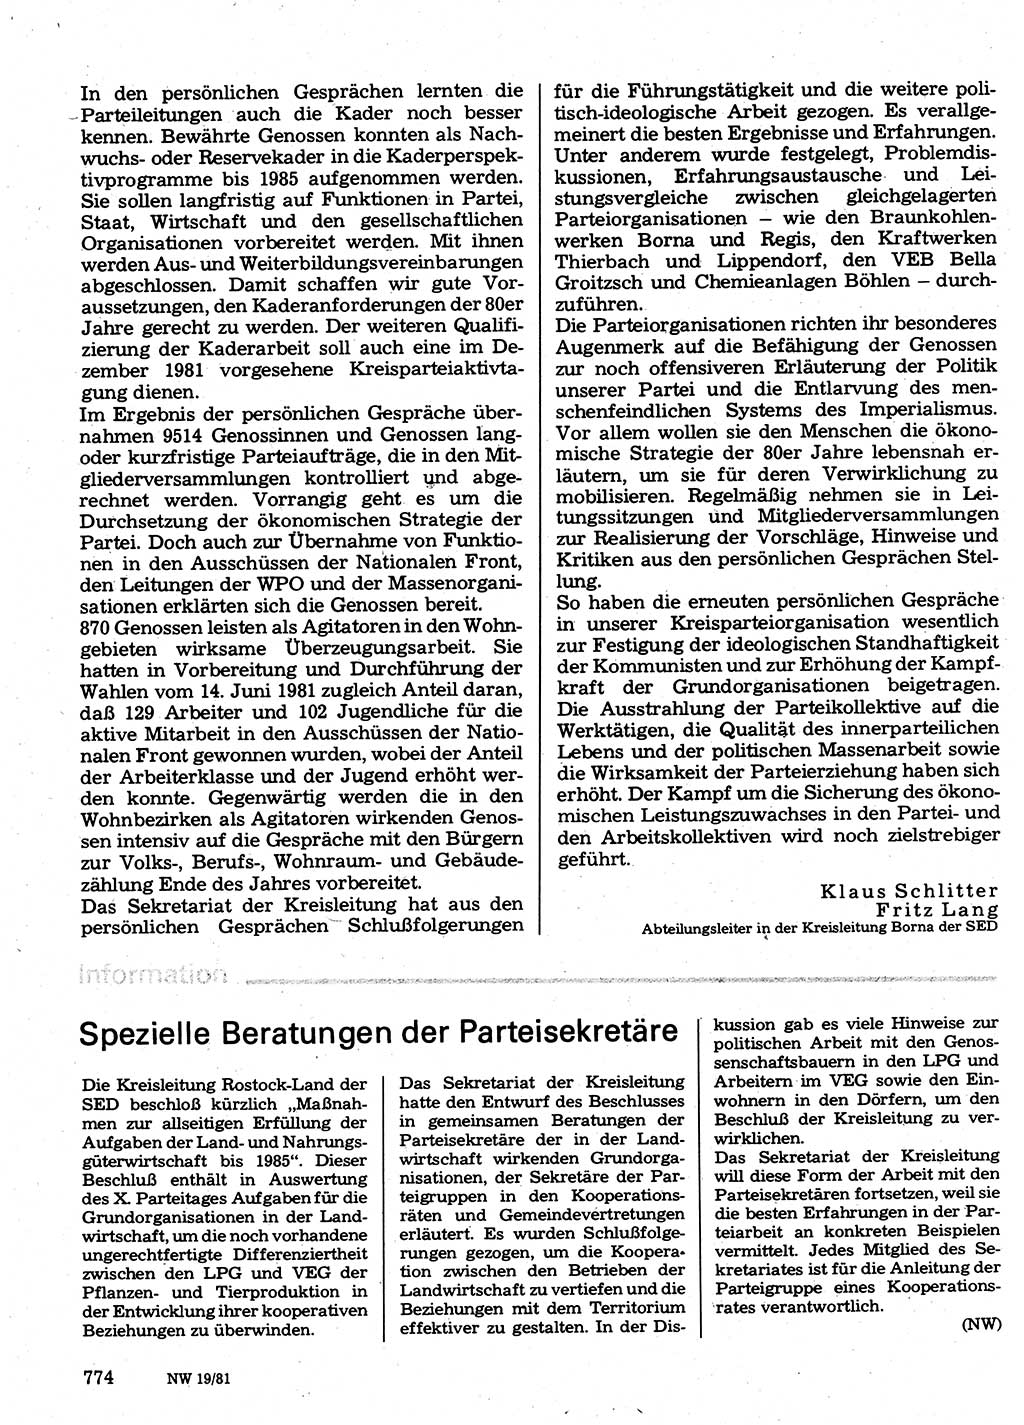 Neuer Weg (NW), Organ des Zentralkomitees (ZK) der SED (Sozialistische Einheitspartei Deutschlands) für Fragen des Parteilebens, 36. Jahrgang [Deutsche Demokratische Republik (DDR)] 1981, Seite 774 (NW ZK SED DDR 1981, S. 774)